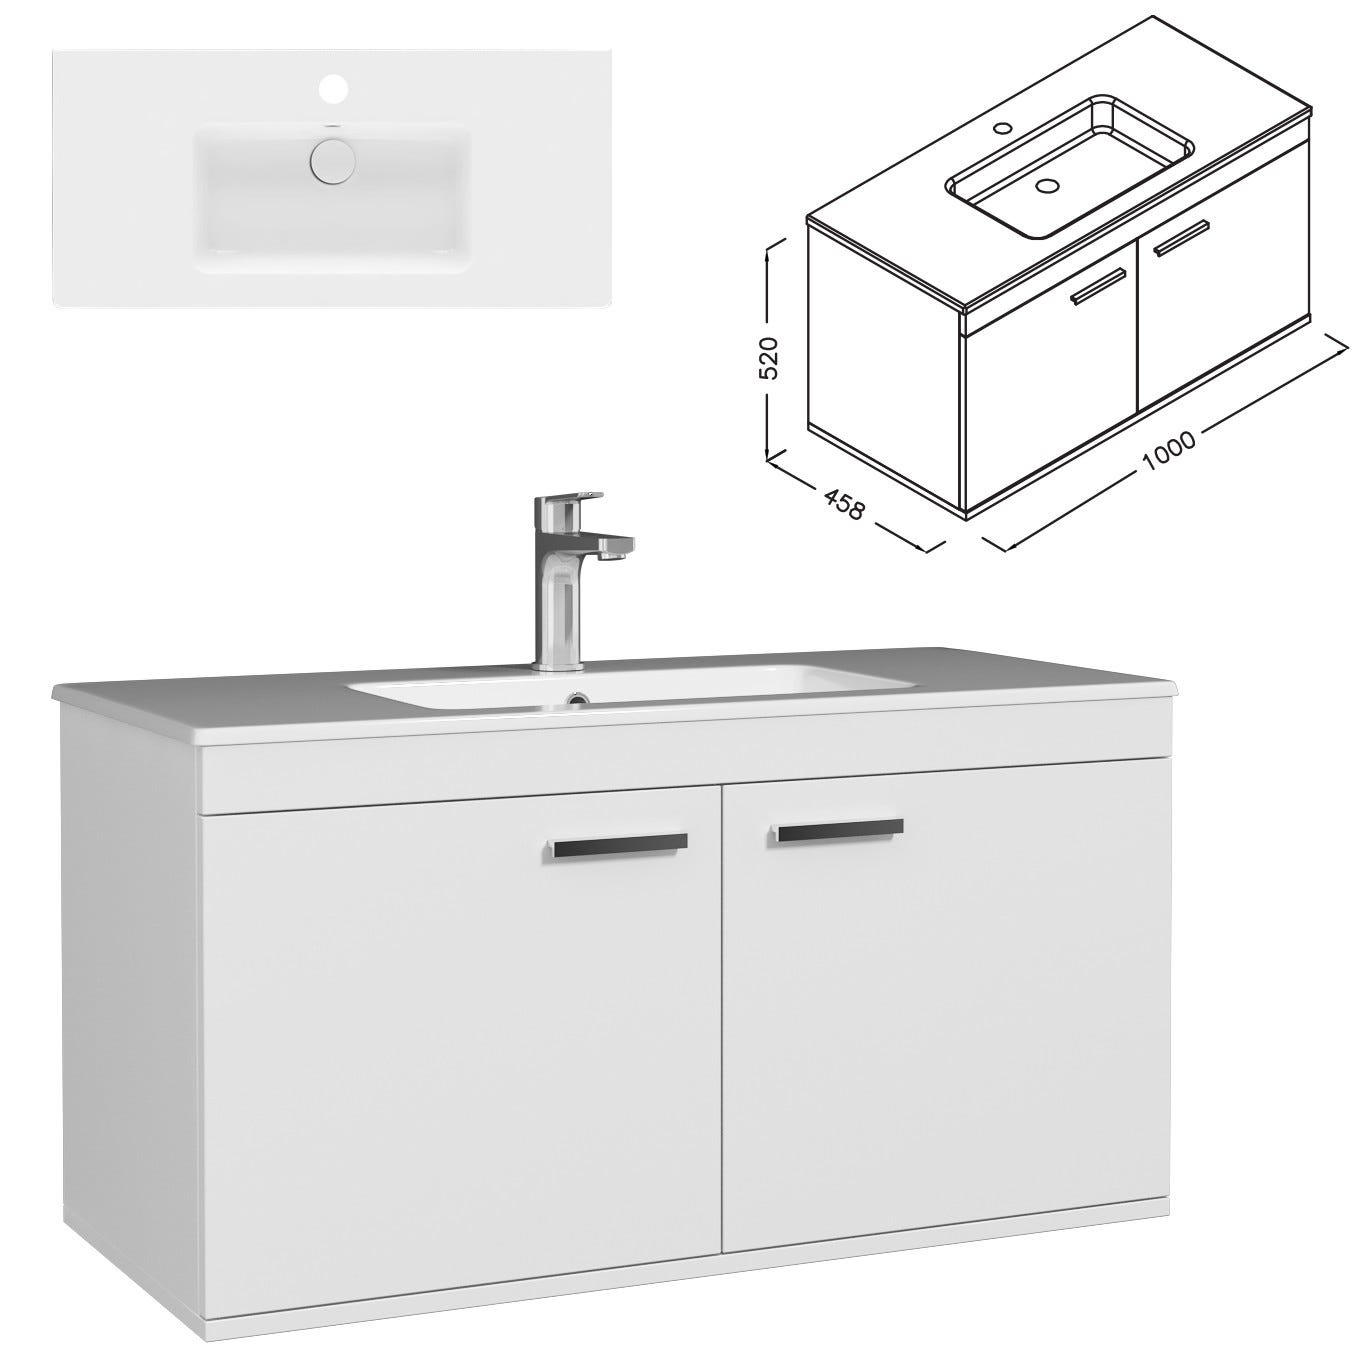 RUBITE Meuble salle de bain simple vasque 2 portes blanc largeur 100 cm 2